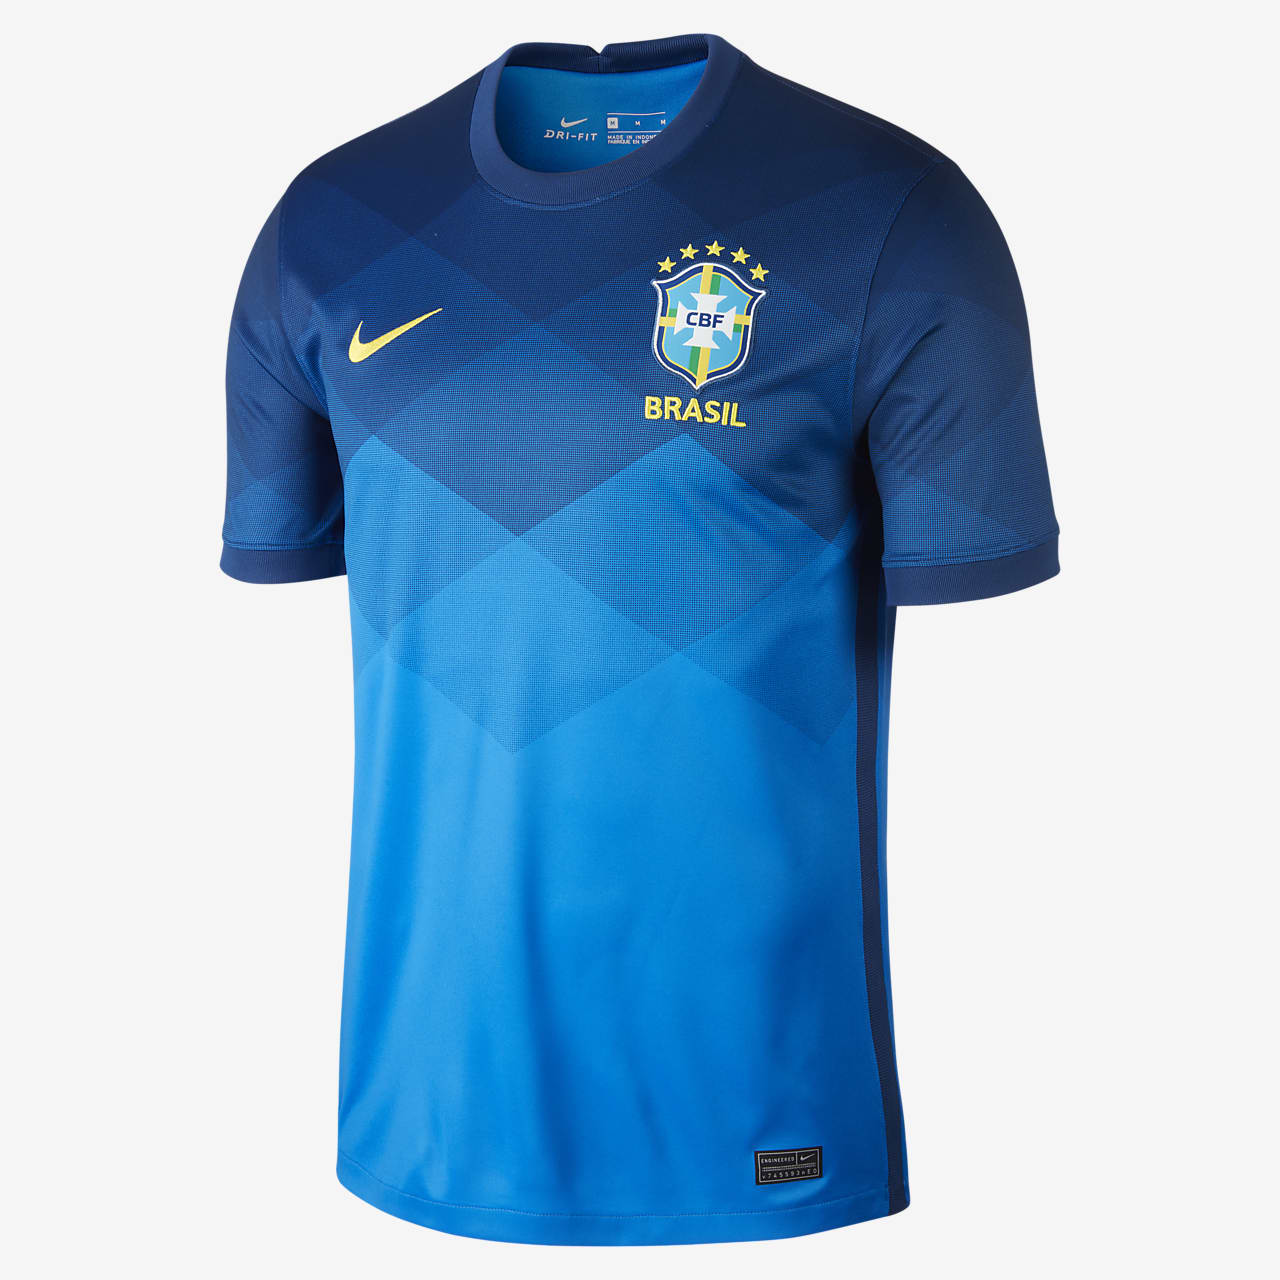 Nike公式 ブラジル スタジアム アウェイ メンズ サッカーユニフォーム オンラインストア 通販サイト